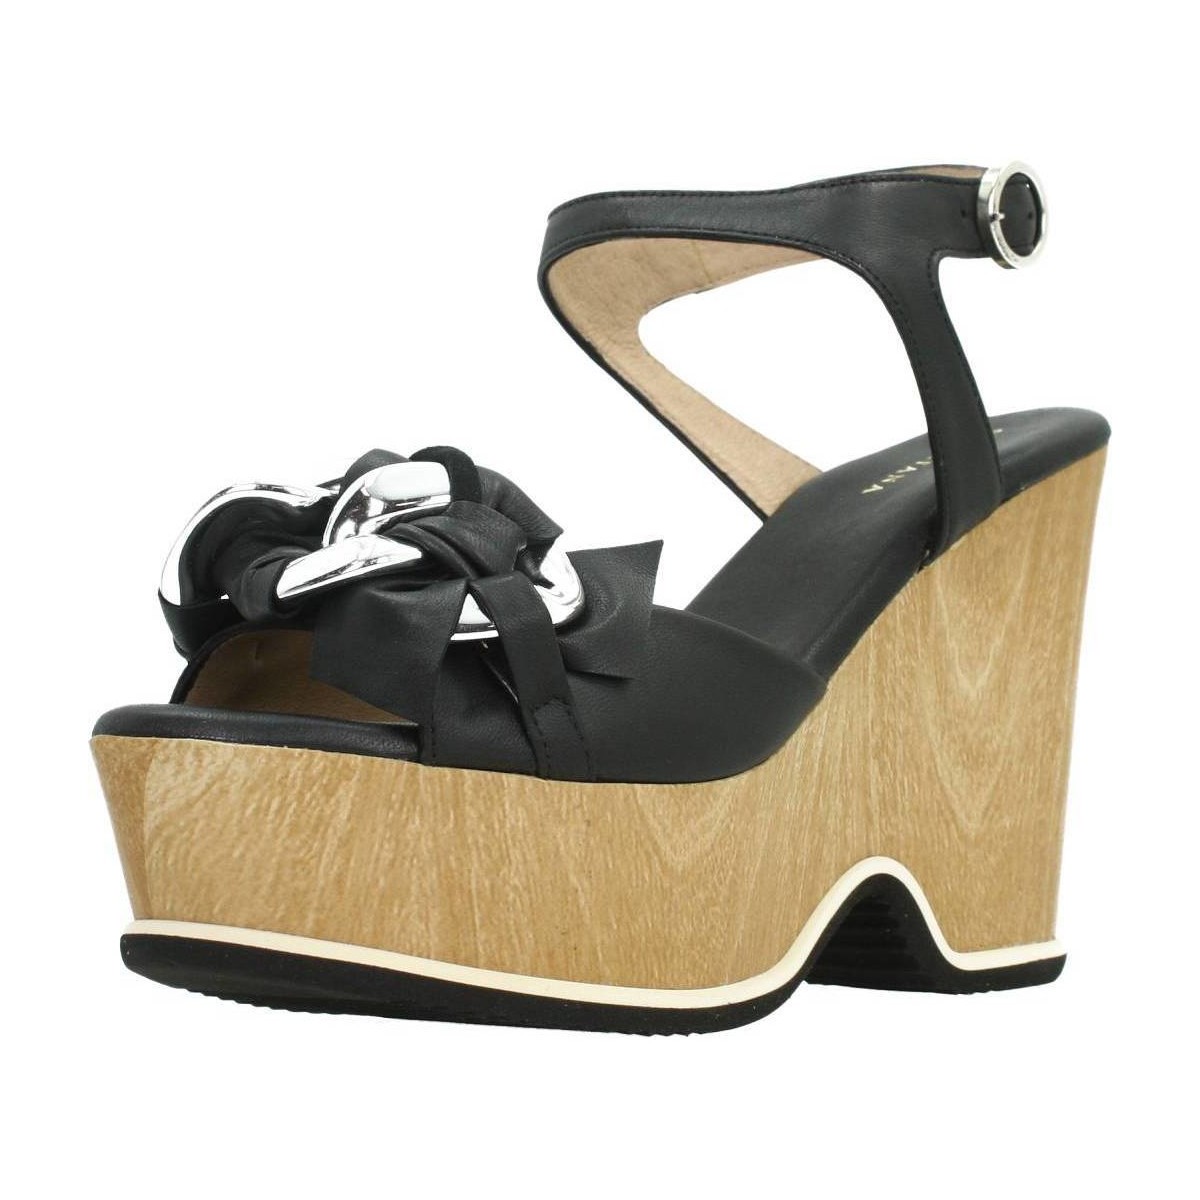 Schoenen Dames Sandalen / Open schoenen Doralatina 48188D Zwart